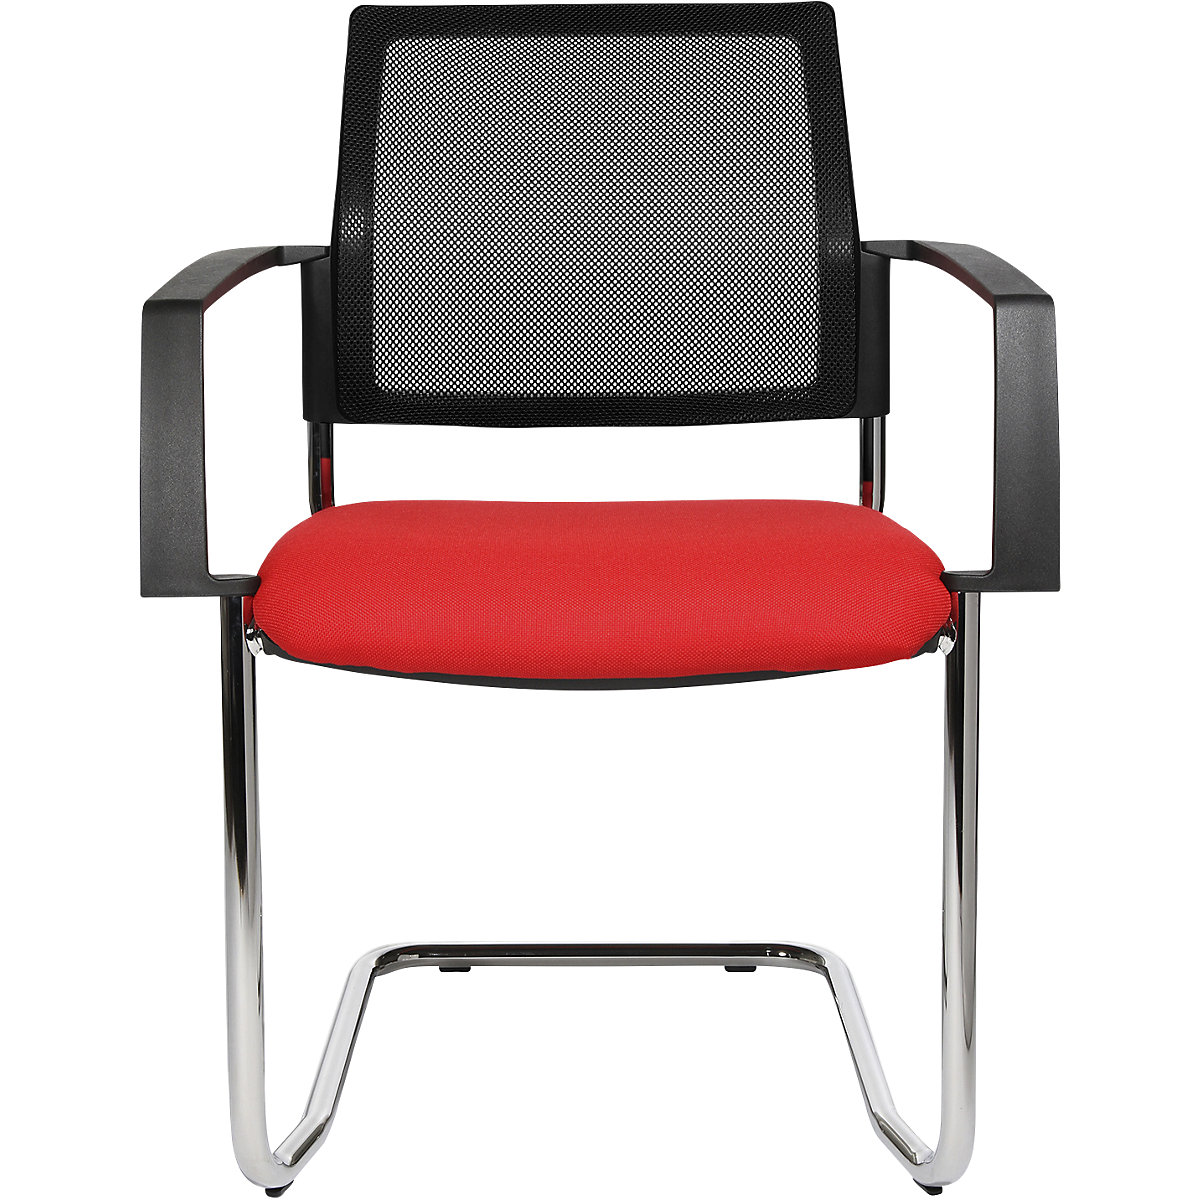 Mesh stapelstoel – Topstar, sledestoel, VE = 2 stuks, zitting rood, frame chroom-3